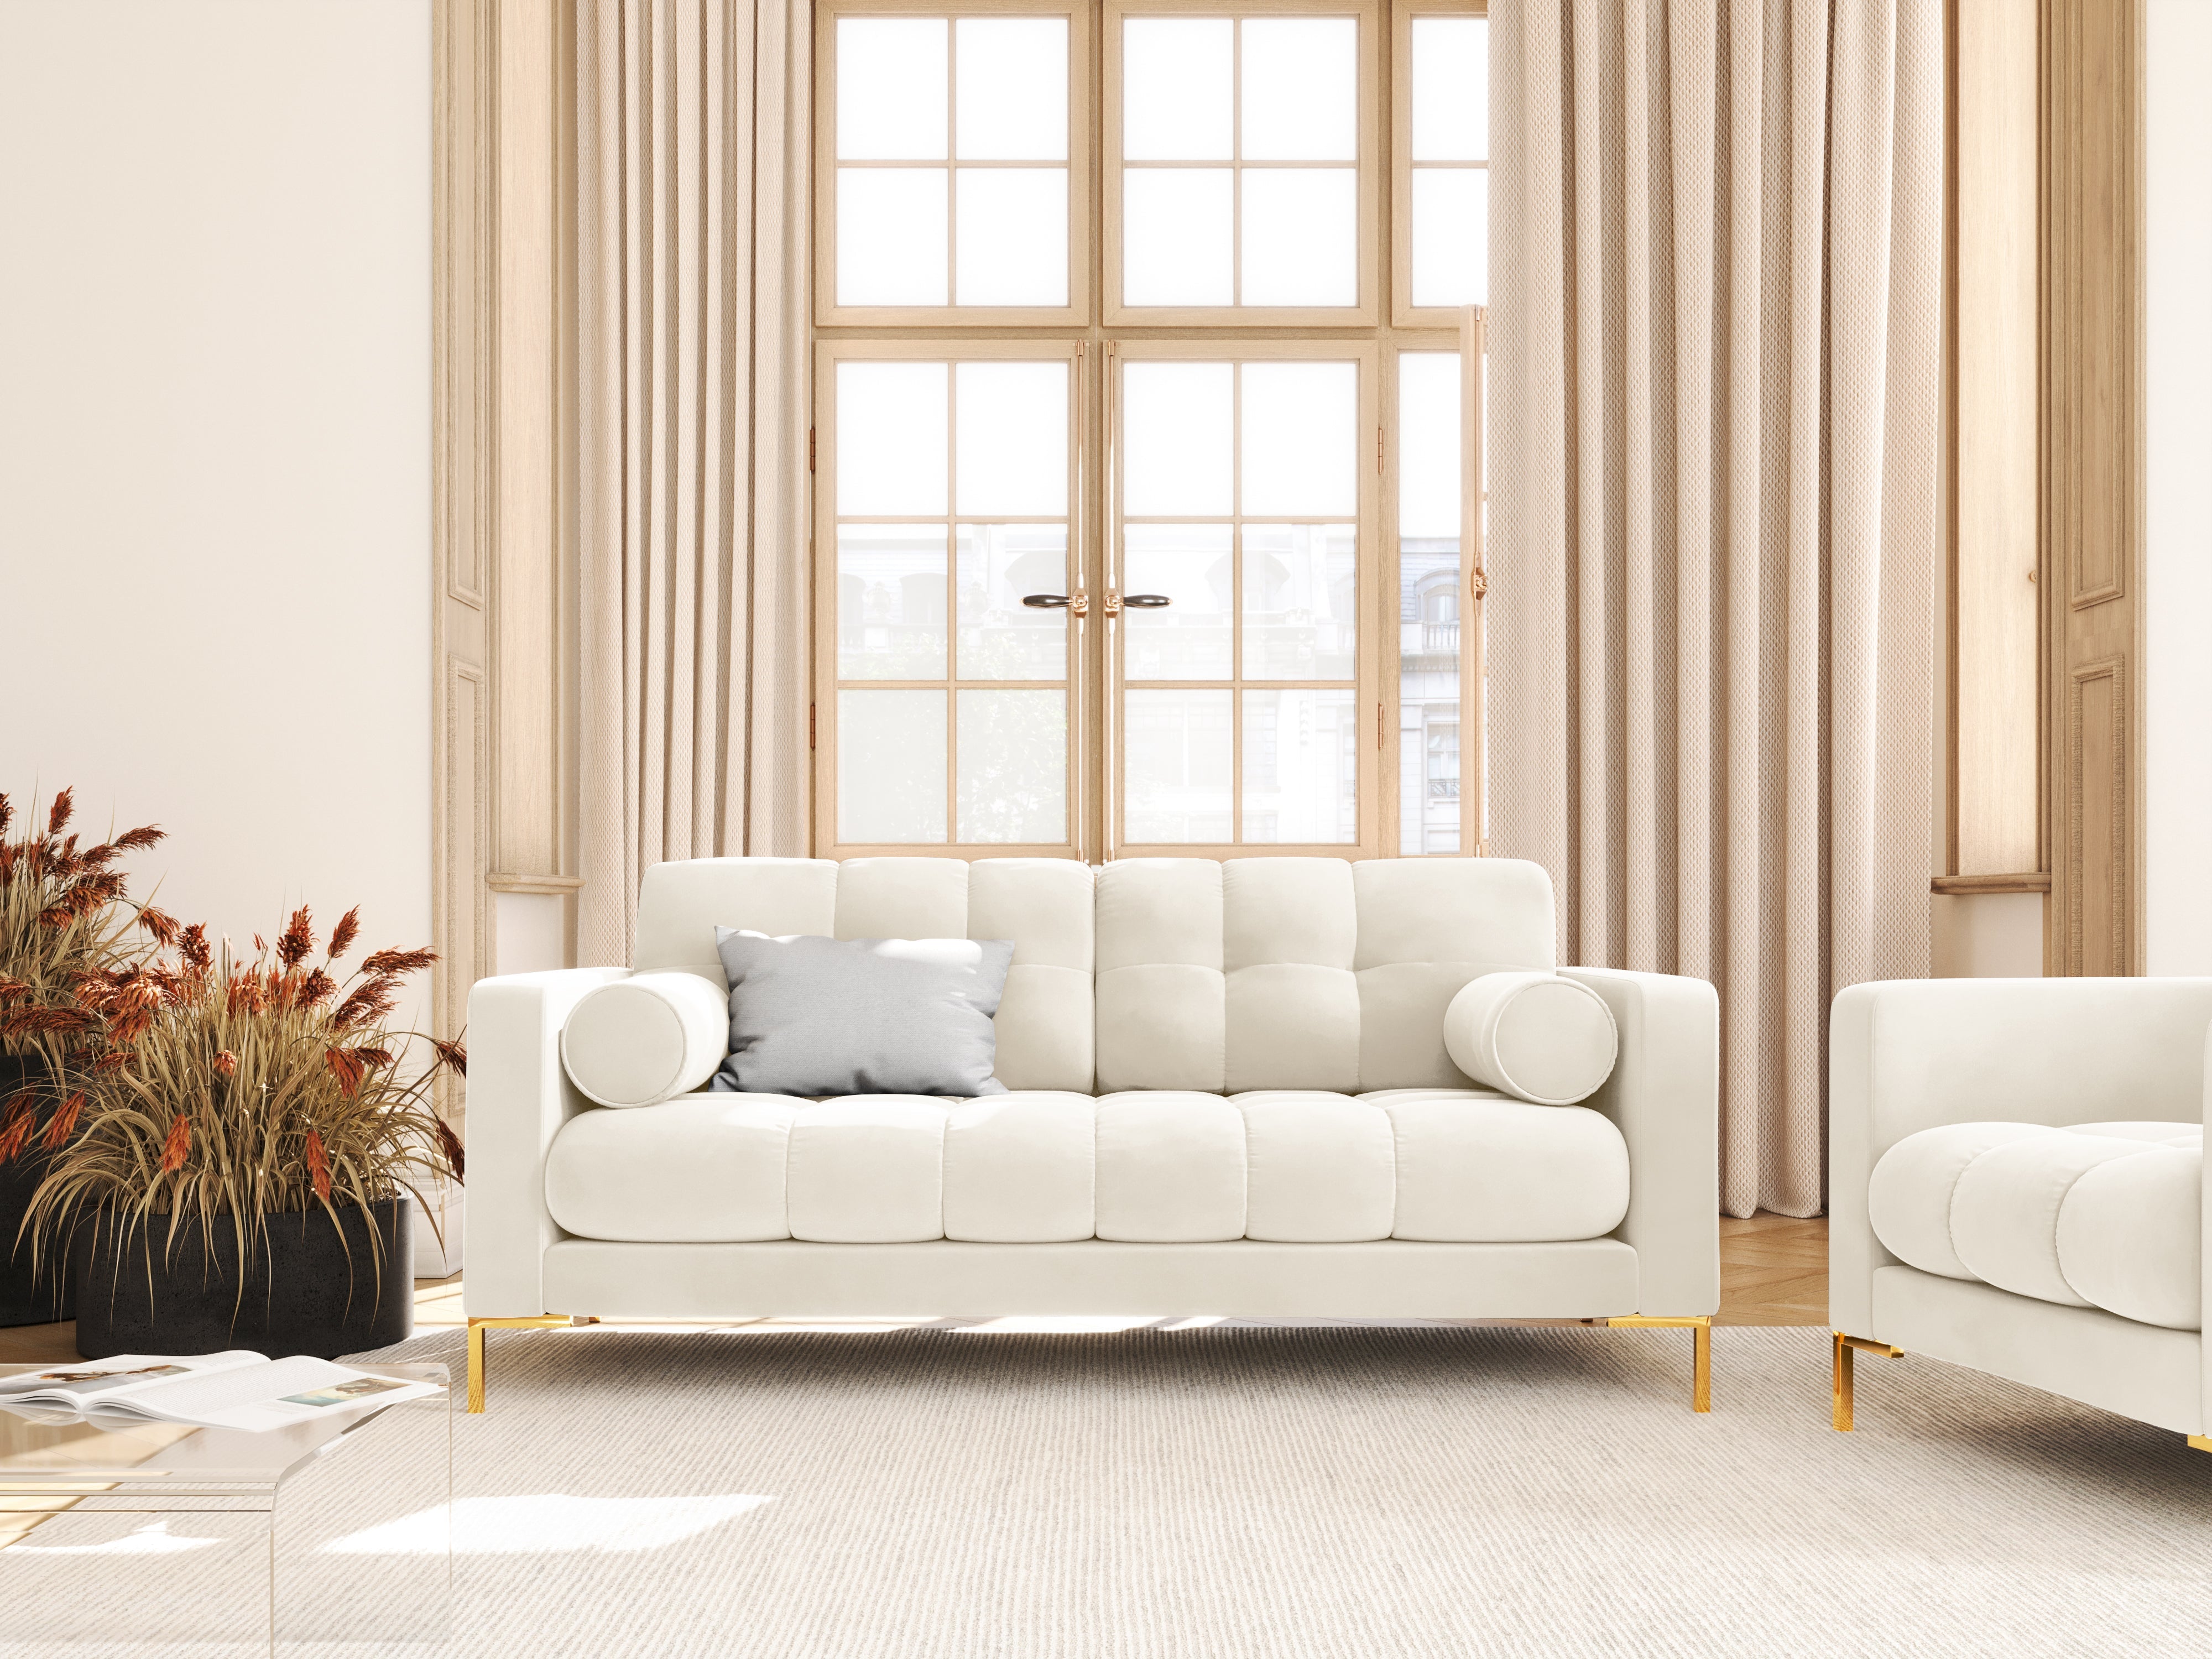 Velvet 2-seater sofa BALI light beige with gold base